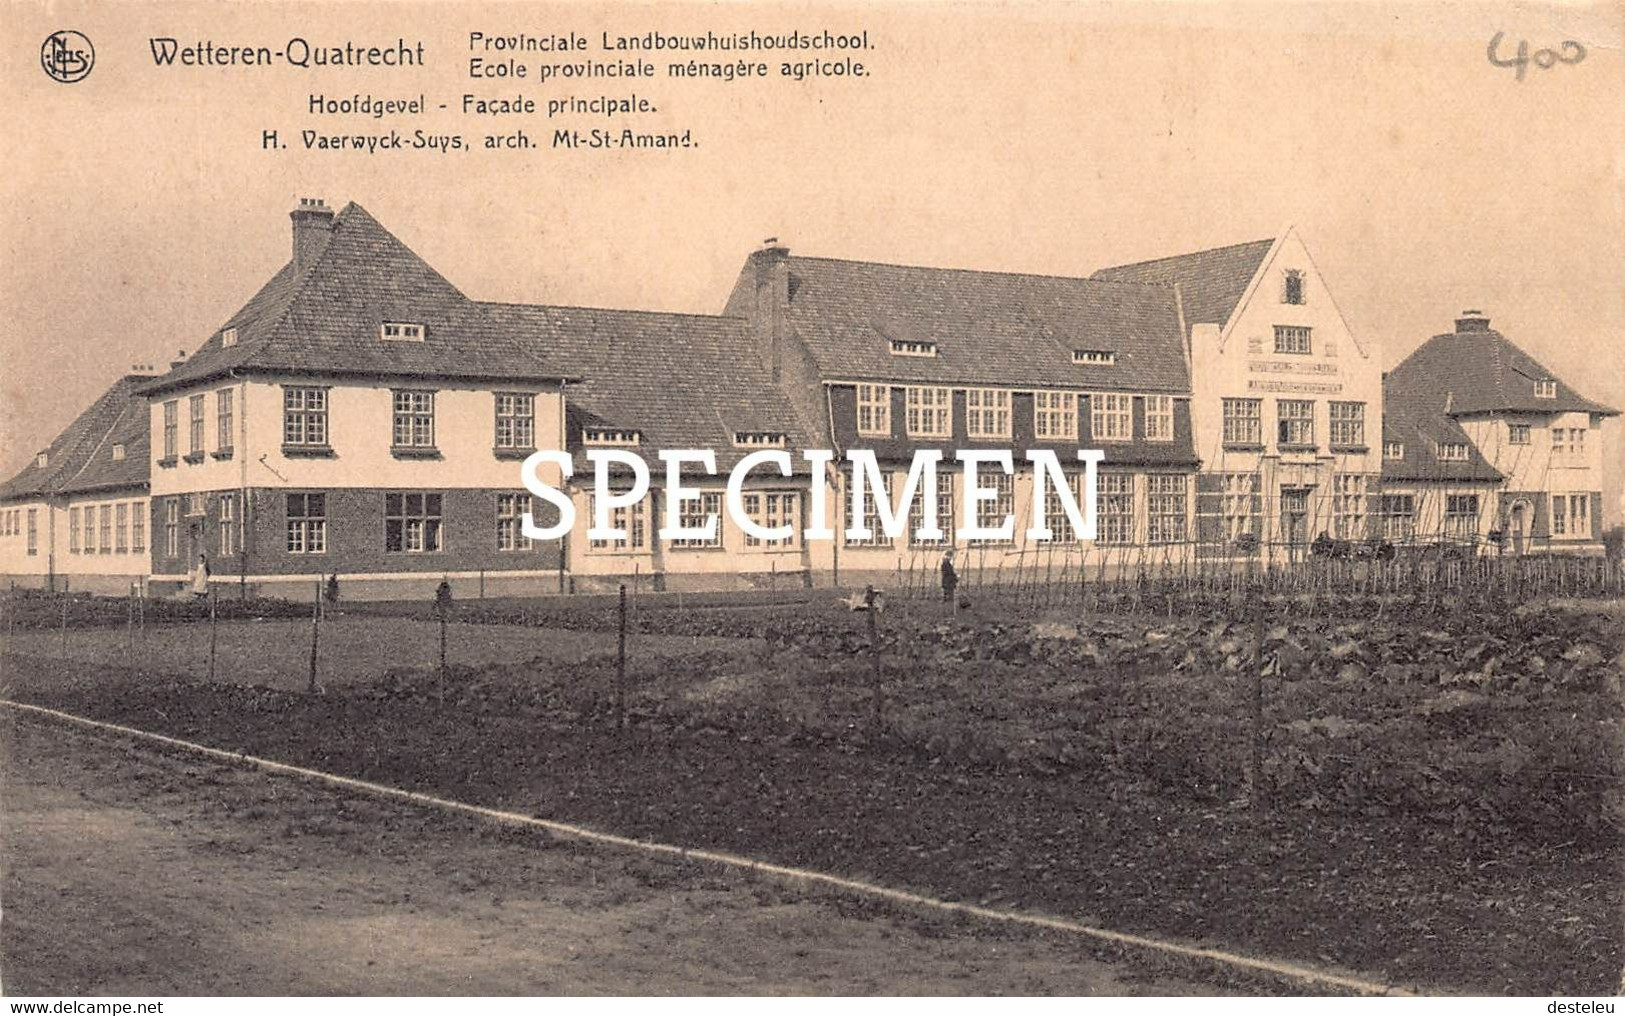 Provinciale Landbouwschool - Hoofdhevel - Wetteren Quatrecht - Wetteren